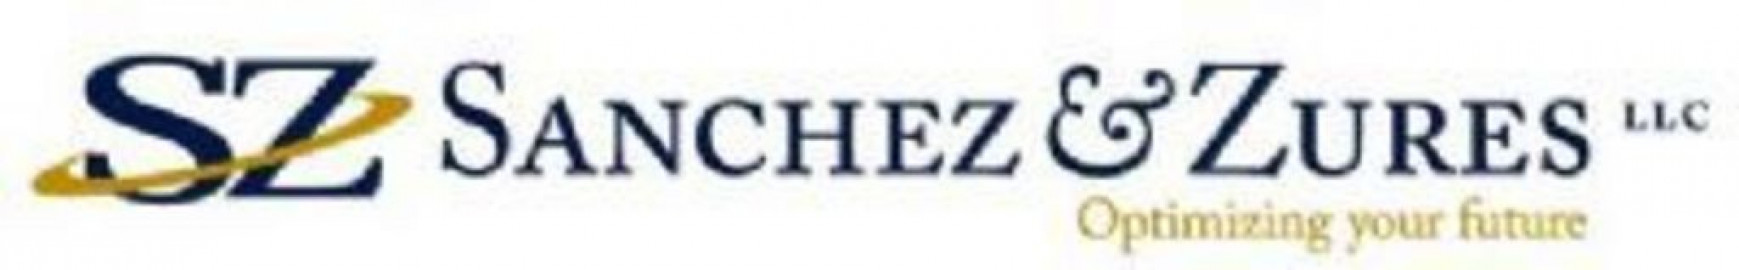 Visit Sanchez & Zures, LLC